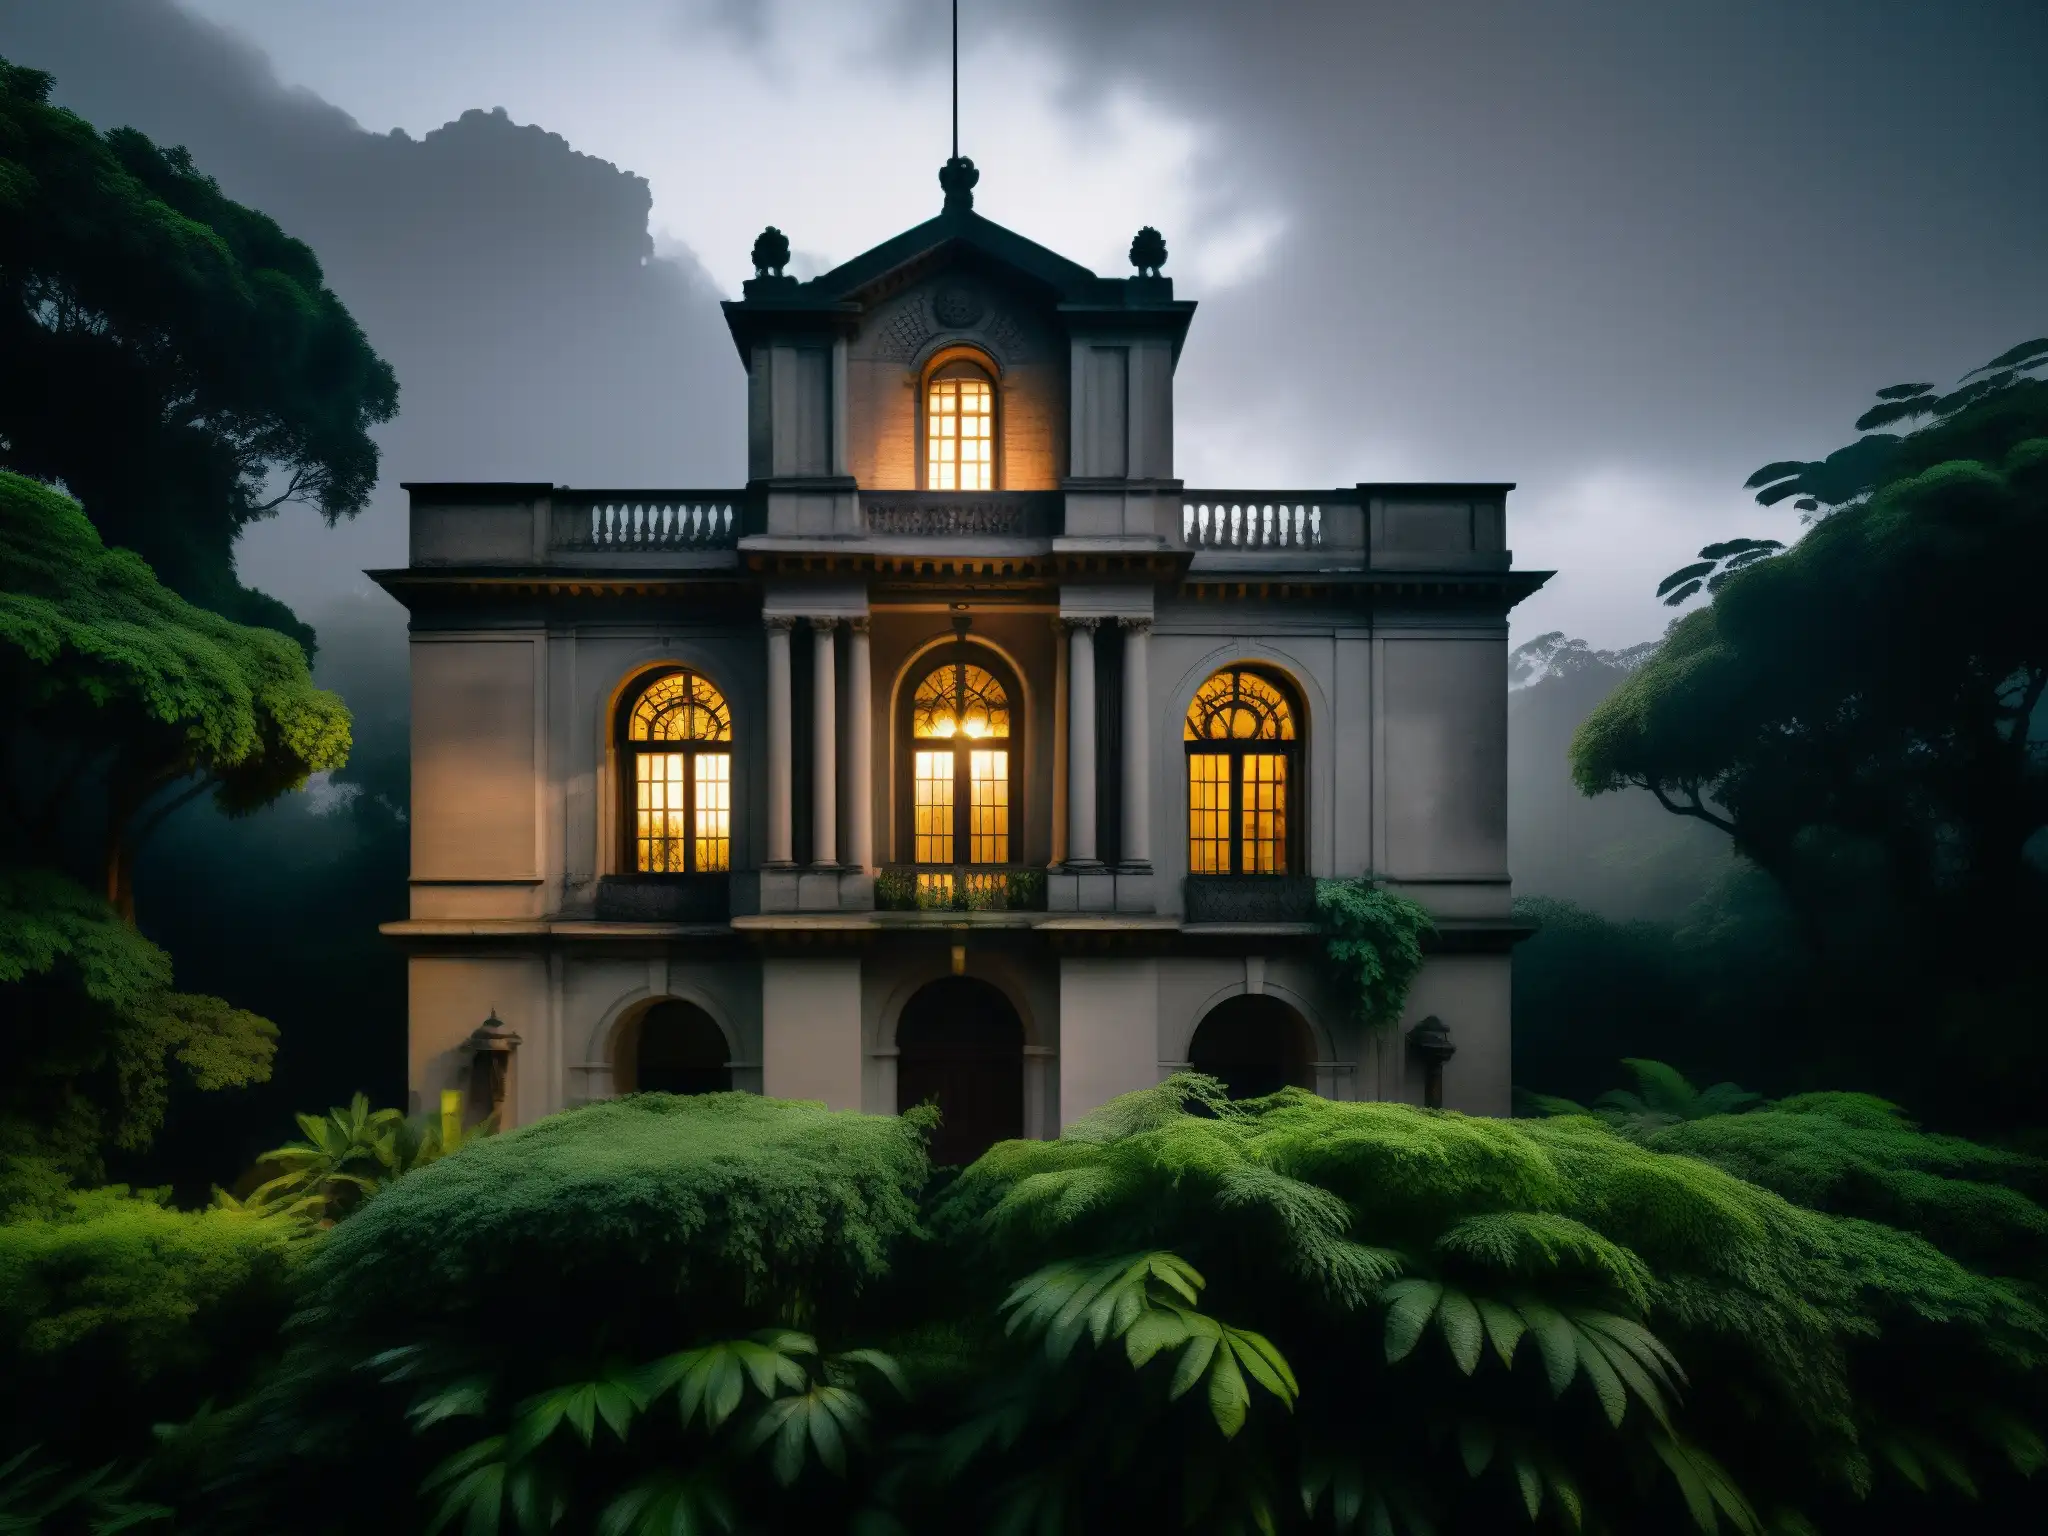 Edificio histórico latinoamericano envuelto en misterio y vegetación exuberante, iluminado por una luz fantasmal